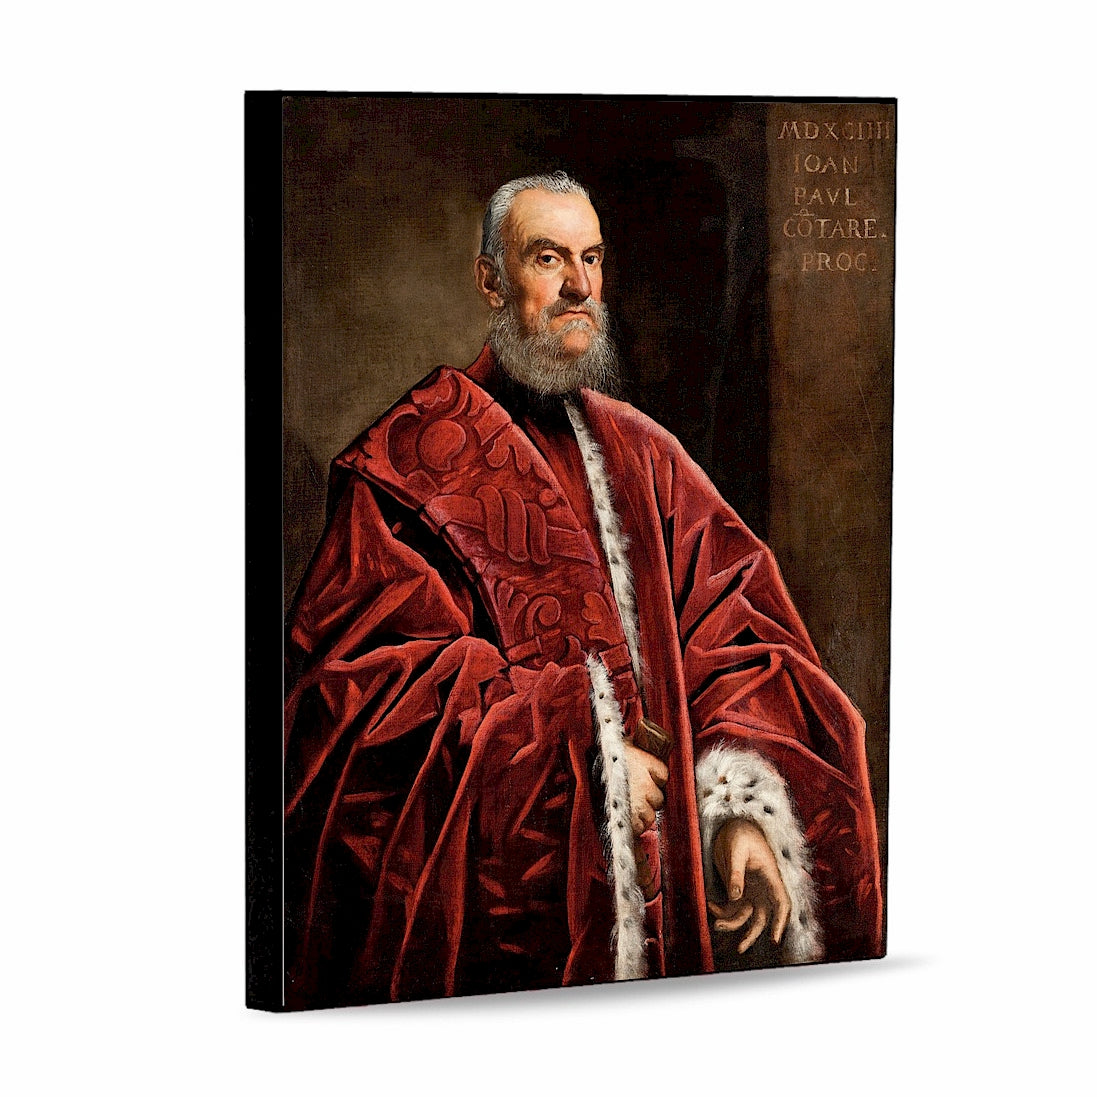 AFFRESCO: Panel Tile - Opera "Giovanni Paolo Contarini" portrait by Domenico Tintoretto (8x10)